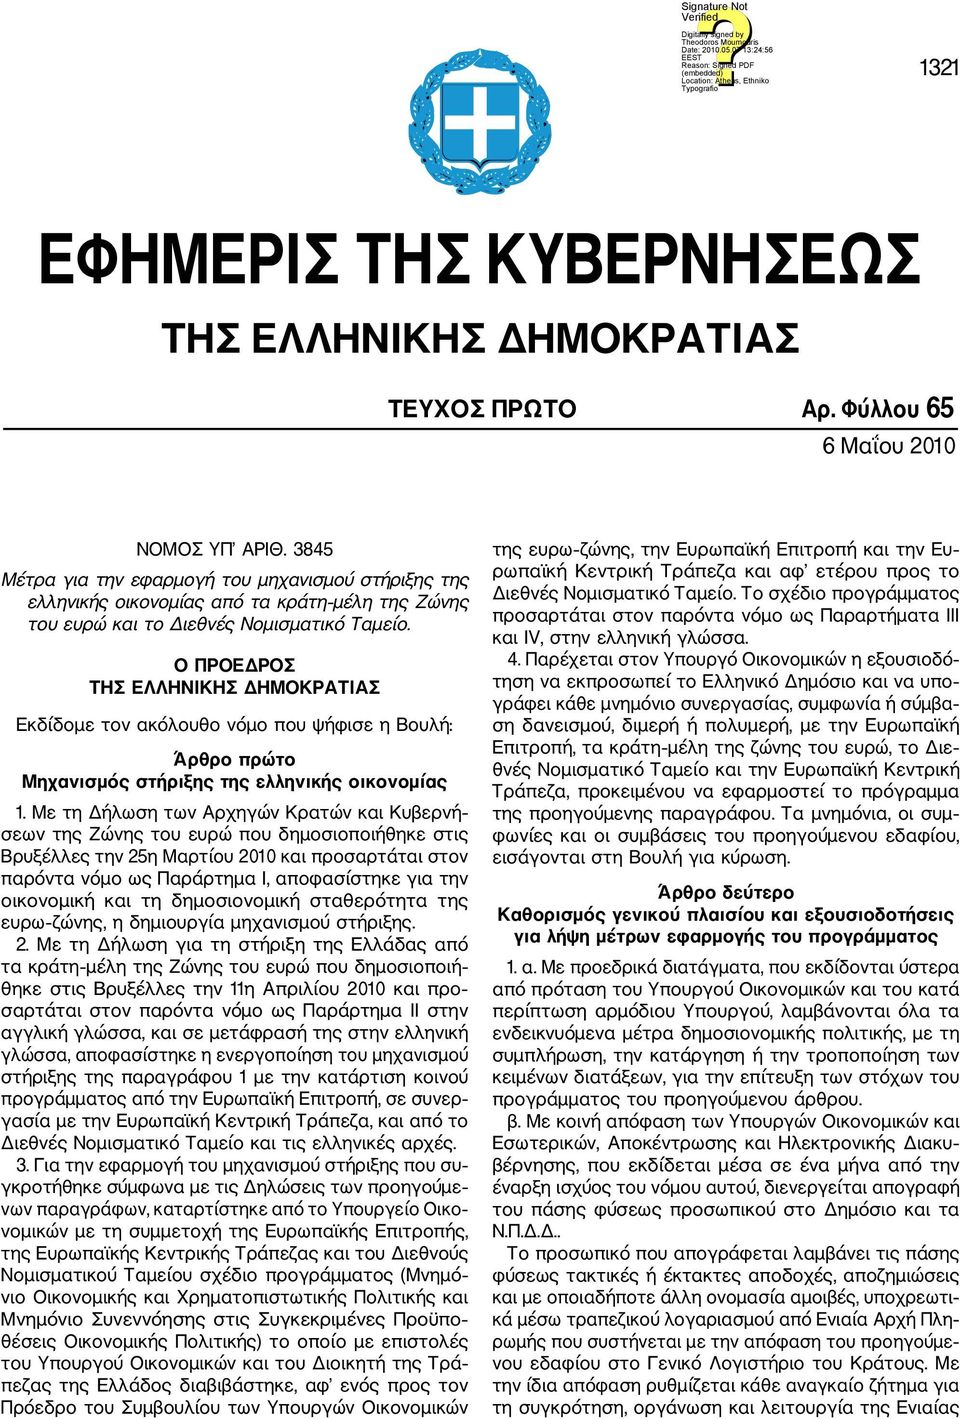 Ο ΠΡΟΕΔΡΟΣ ΤΗΣ ΕΛΛΗΝΙΚΗΣ ΔΗΜΟΚΡΑΤΙΑΣ Εκδίδομε τον ακόλουθο νόμο που ψήφισε η Βουλή: Άρθρο πρώτο Μηχανισμός στήριξης της ελληνικής οικονομίας 1.